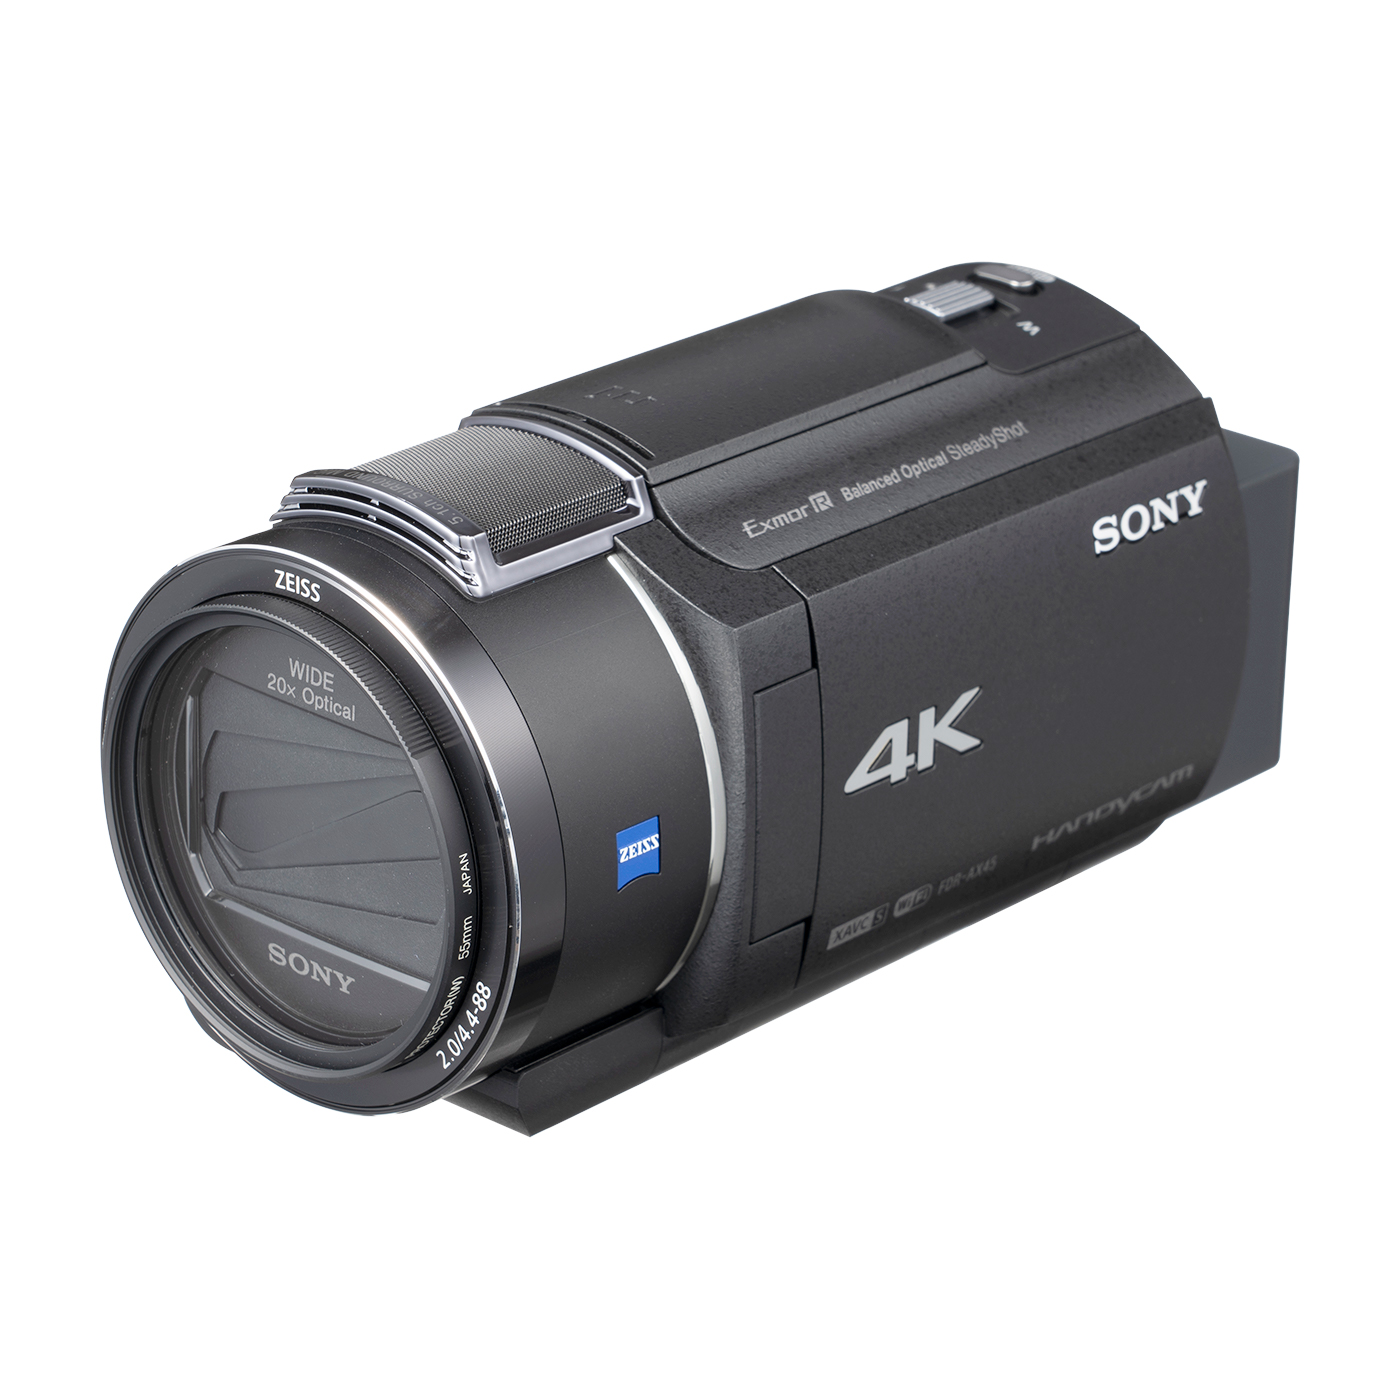 驚きの値段 無料長期保証 ビデオカメラ ソニー ビデオ カメラ 4K FDR-AX45-B Handycam ハンディカム  デジタル4Kビデオカメラレコーダー ブラック sarozambia.com